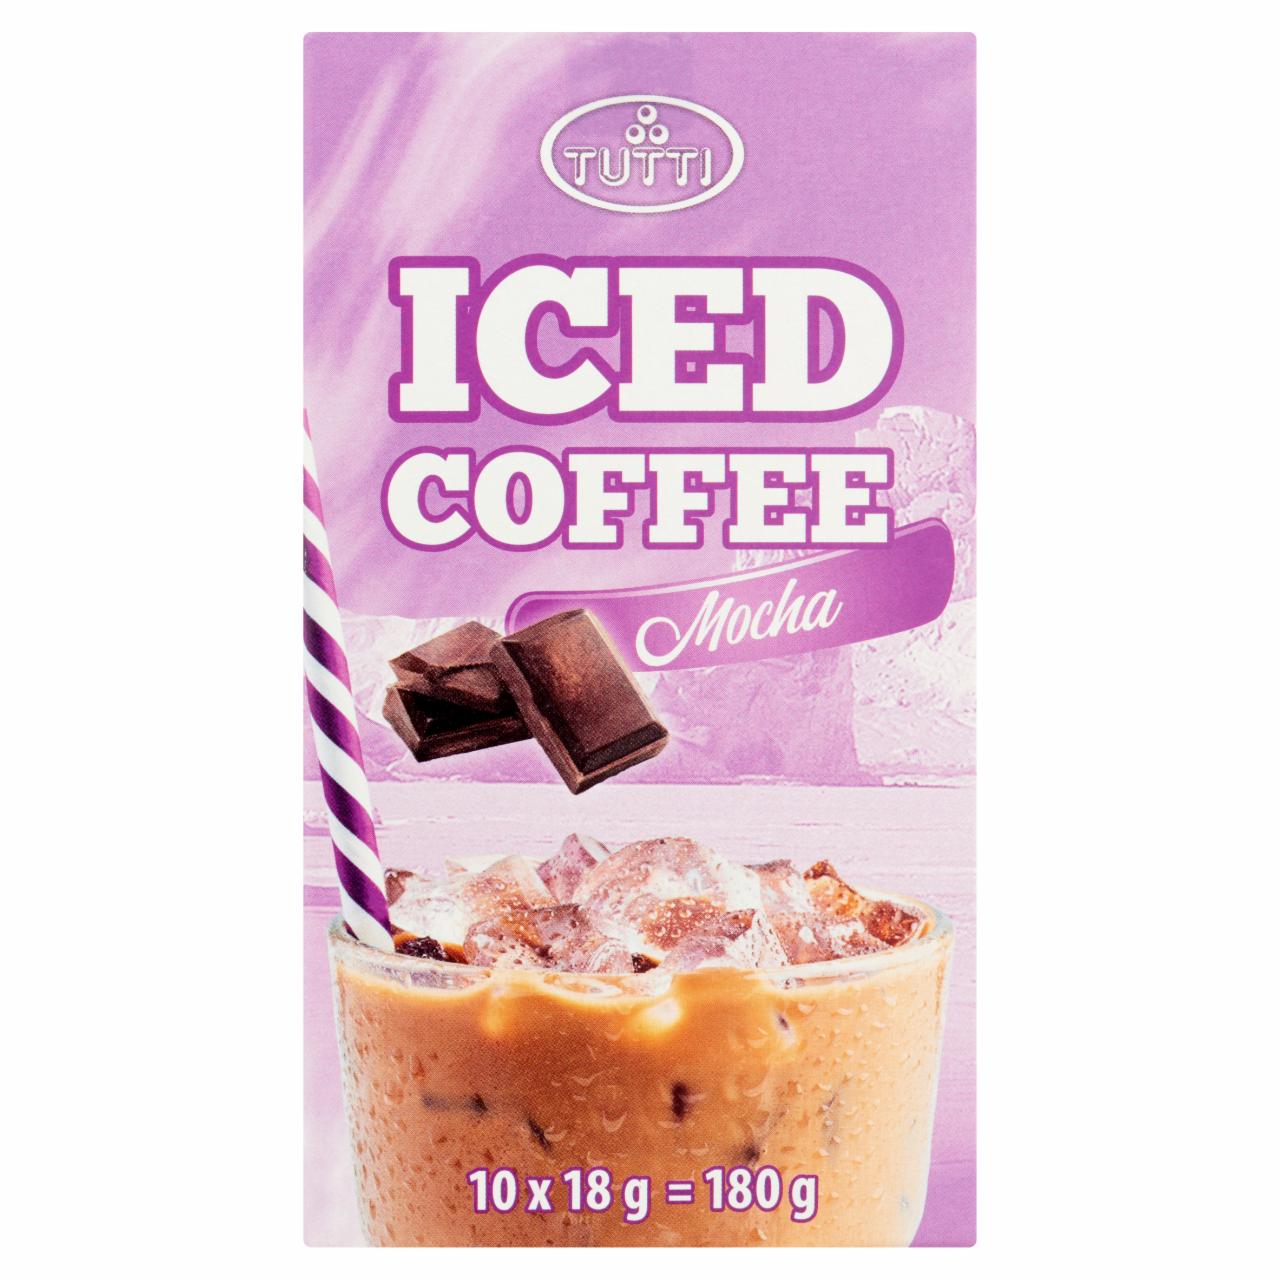 Képek - Tutti csokoládé ízű jeges kávé italpor 10 db 180 g